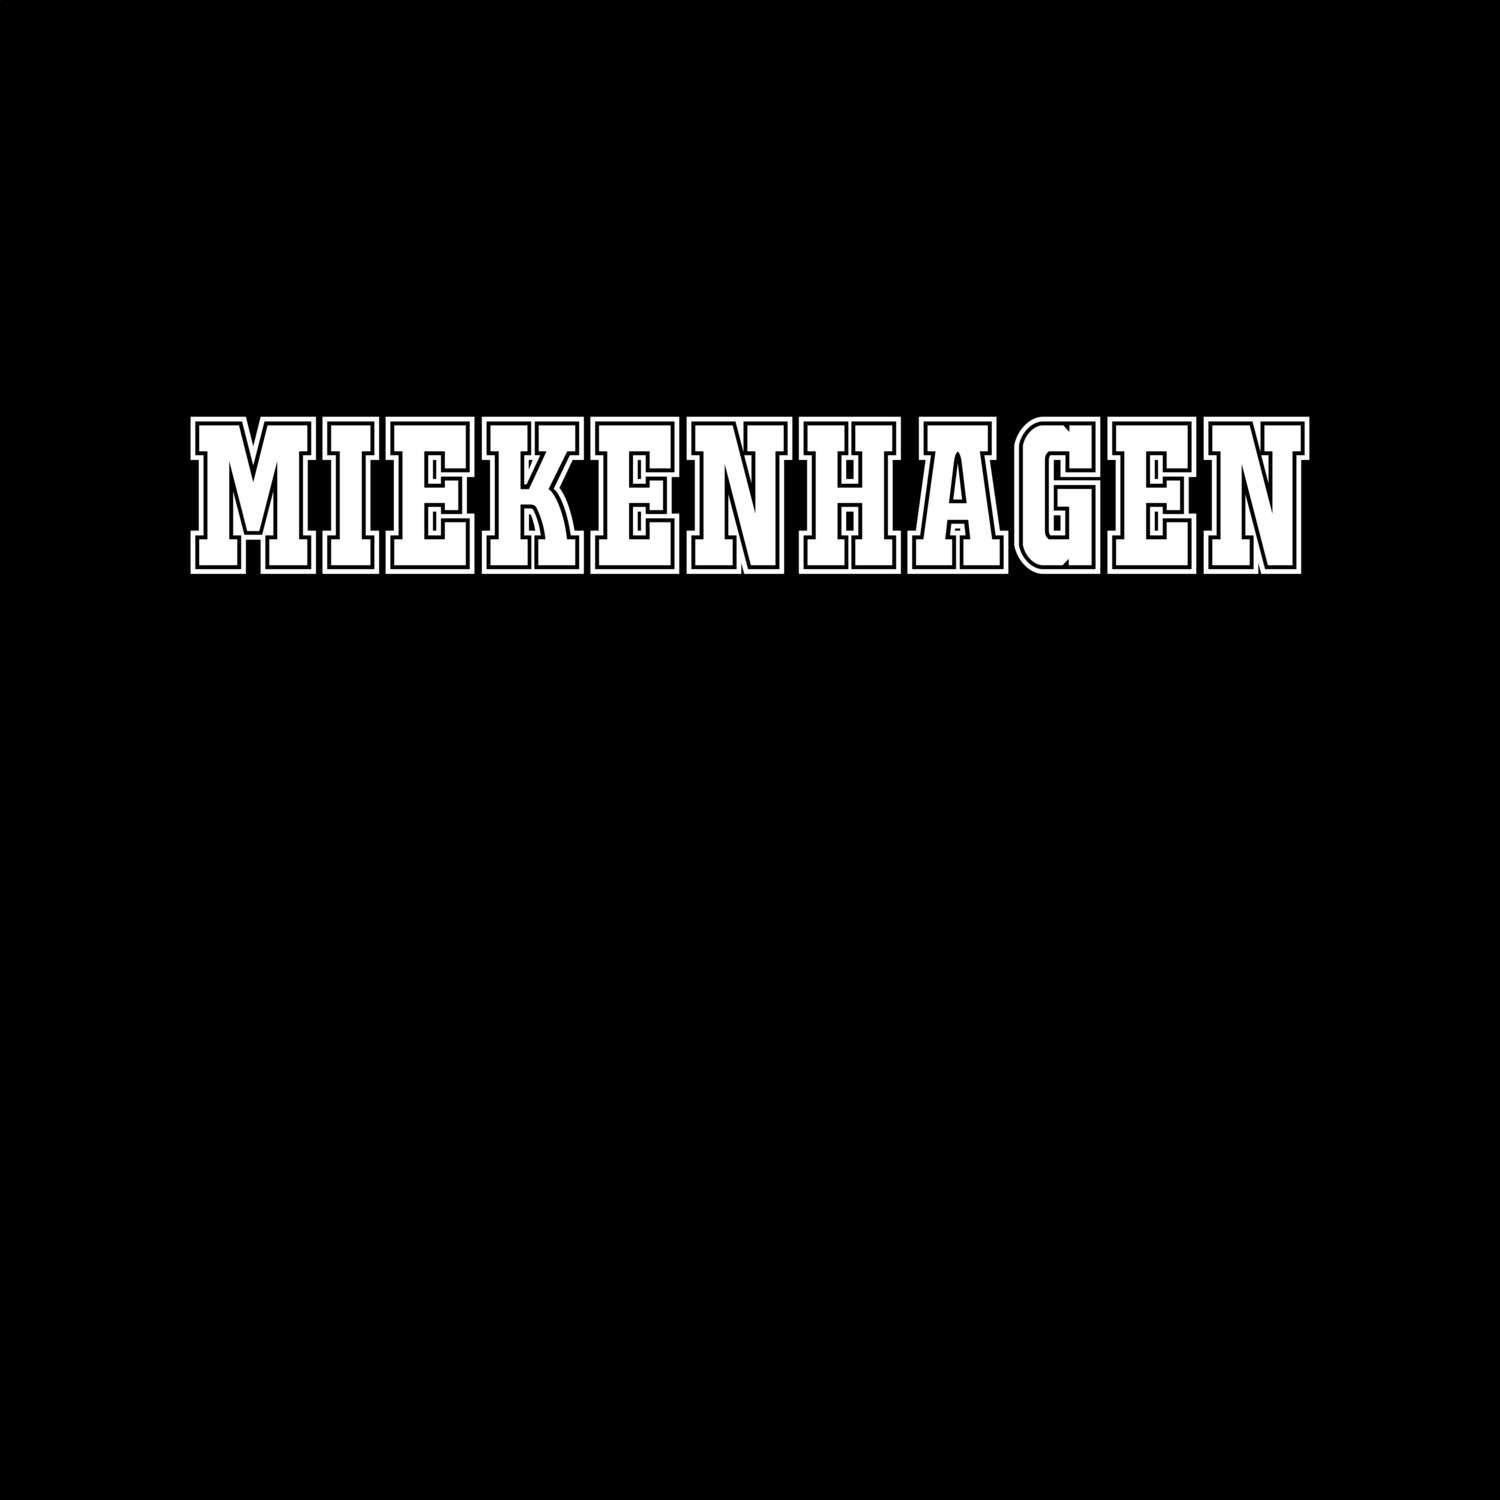 Miekenhagen T-Shirt »Classic«